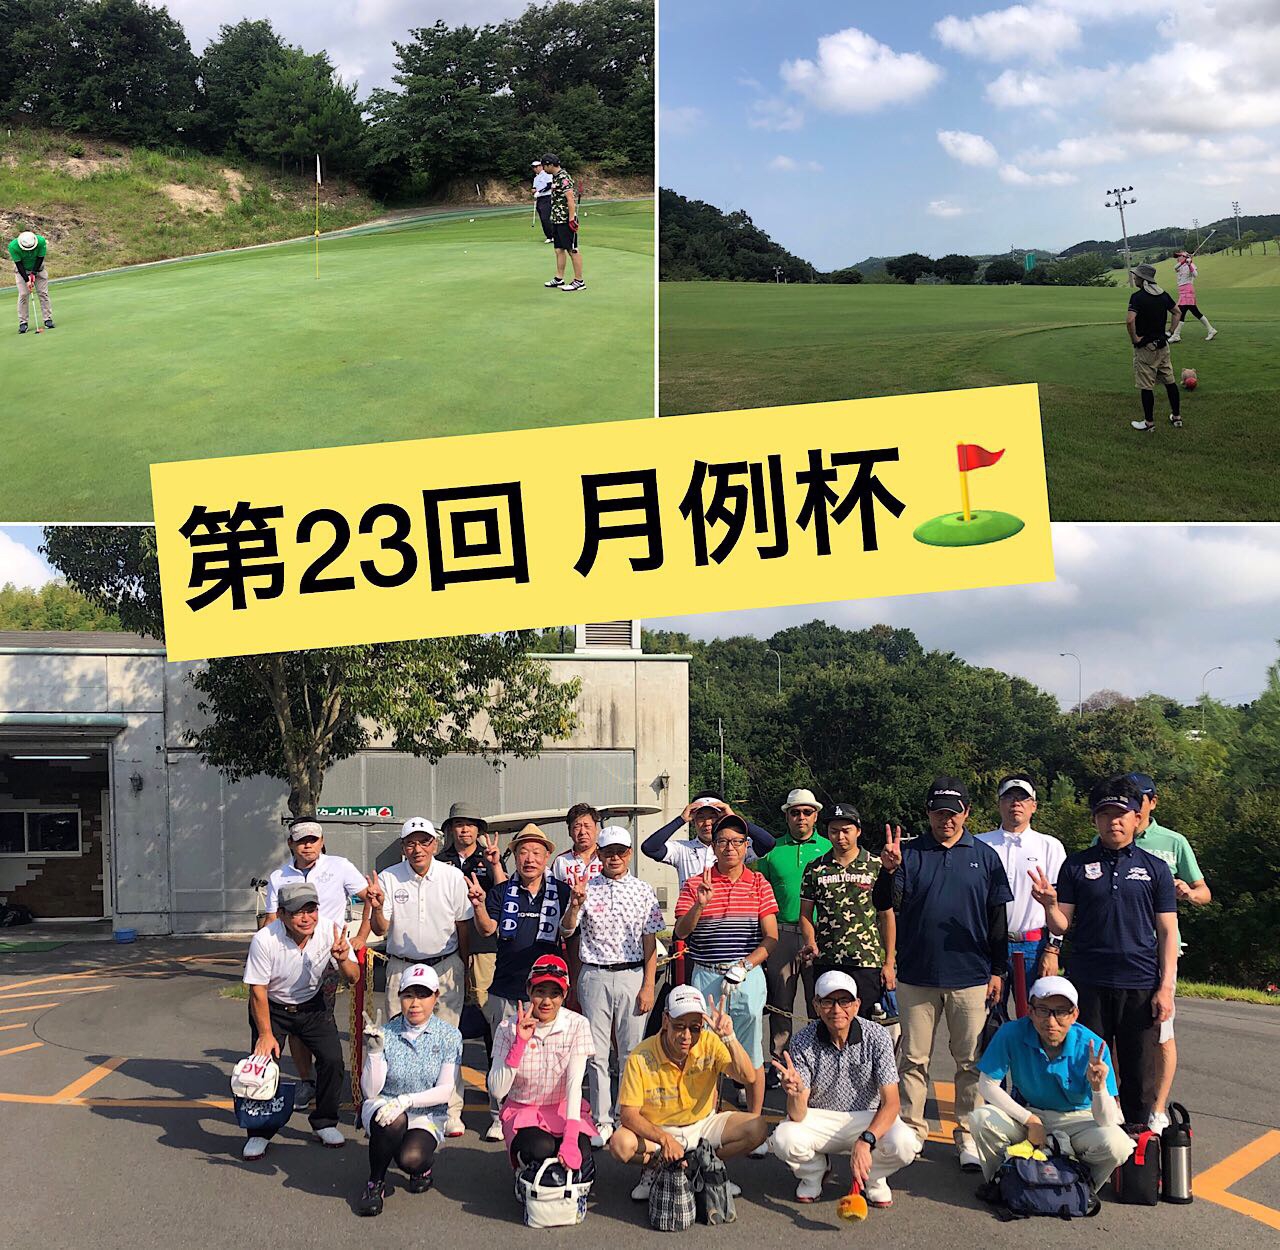 第23回 月例杯 9月スケジュール Naokiゴルフ塾 大阪 堺市のゴルフスクール